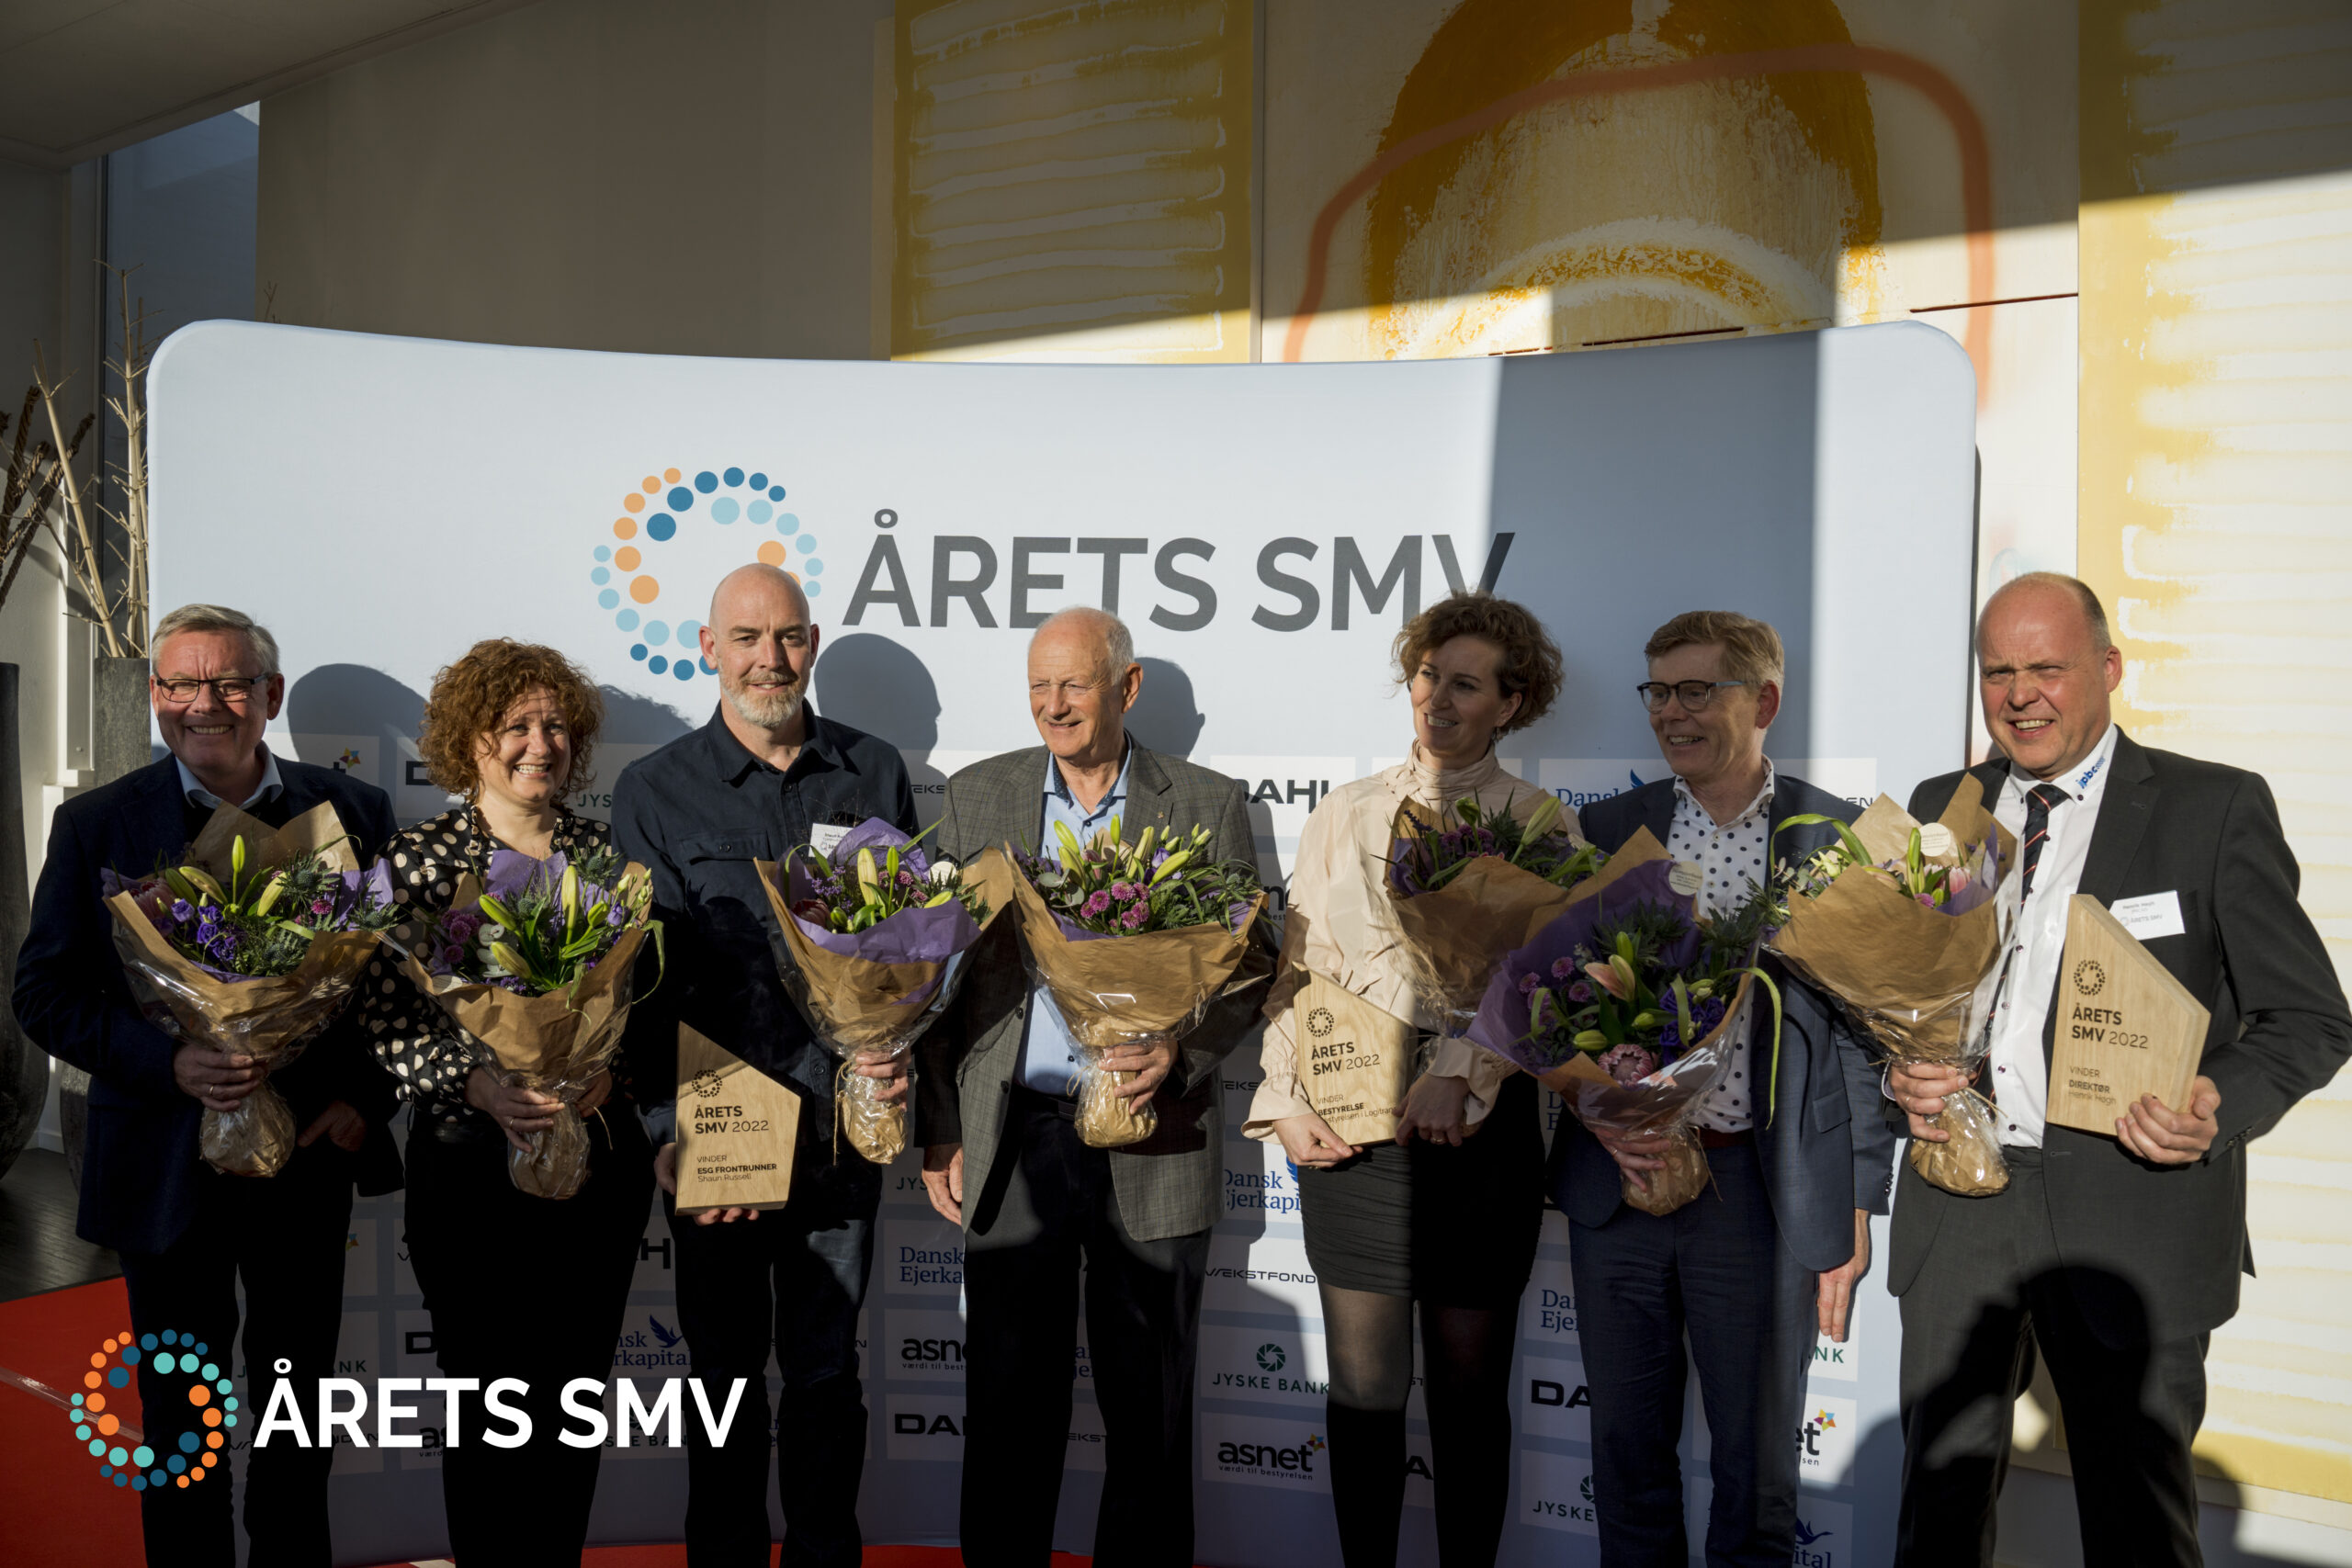 Gruppebillede af vinderne af Årets SMV 2022 priserne, Årets Direktør, Årets ESG Frontrunner og Årets Bestyrelse